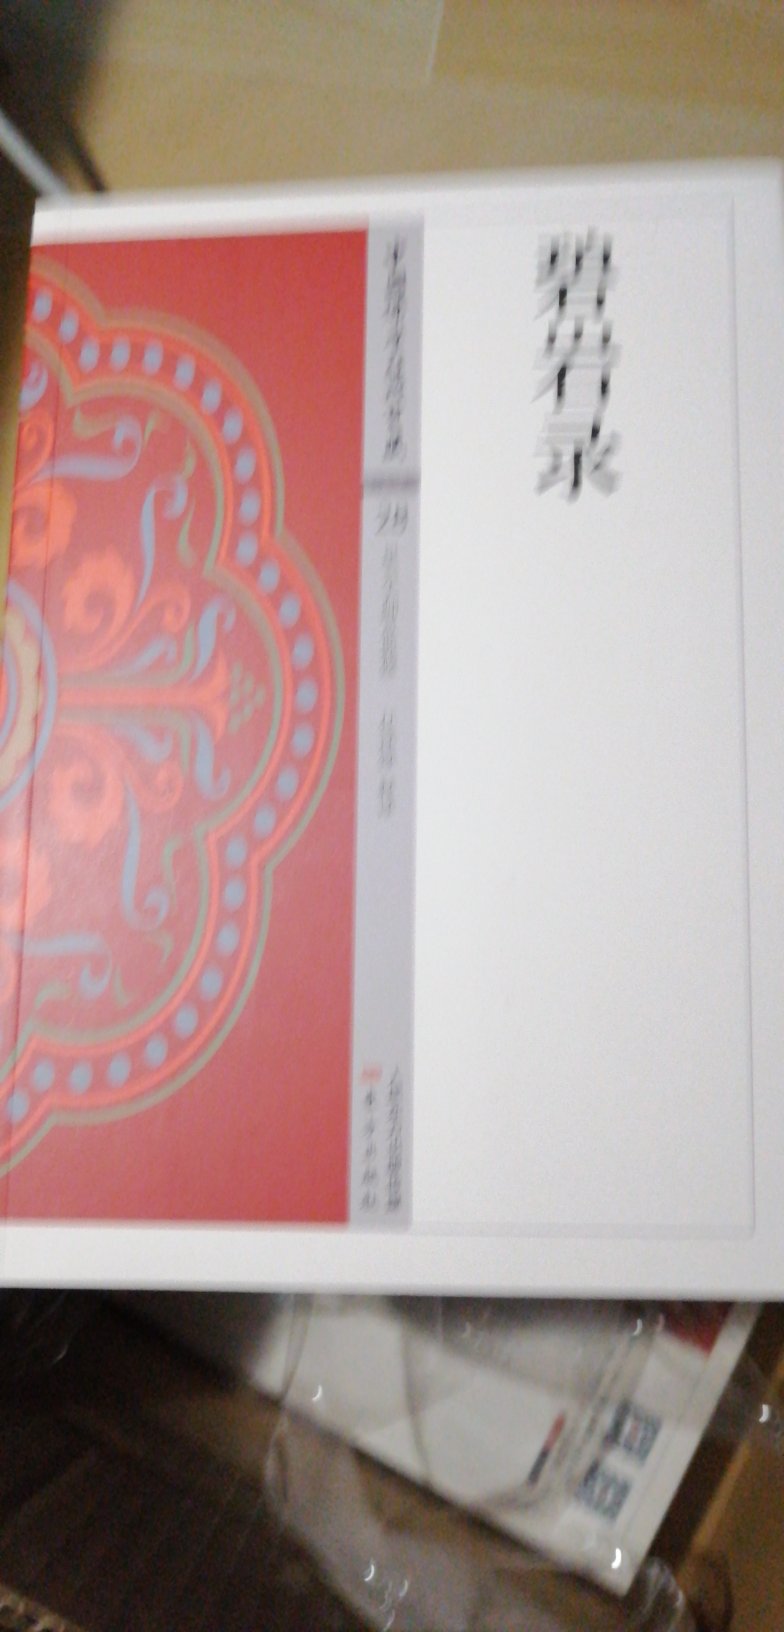 碧岩录，很有名的佛教典籍！拍下来品味！东方出版社的印质挺好的！感谢！感谢的全体人员！大家辛苦了！